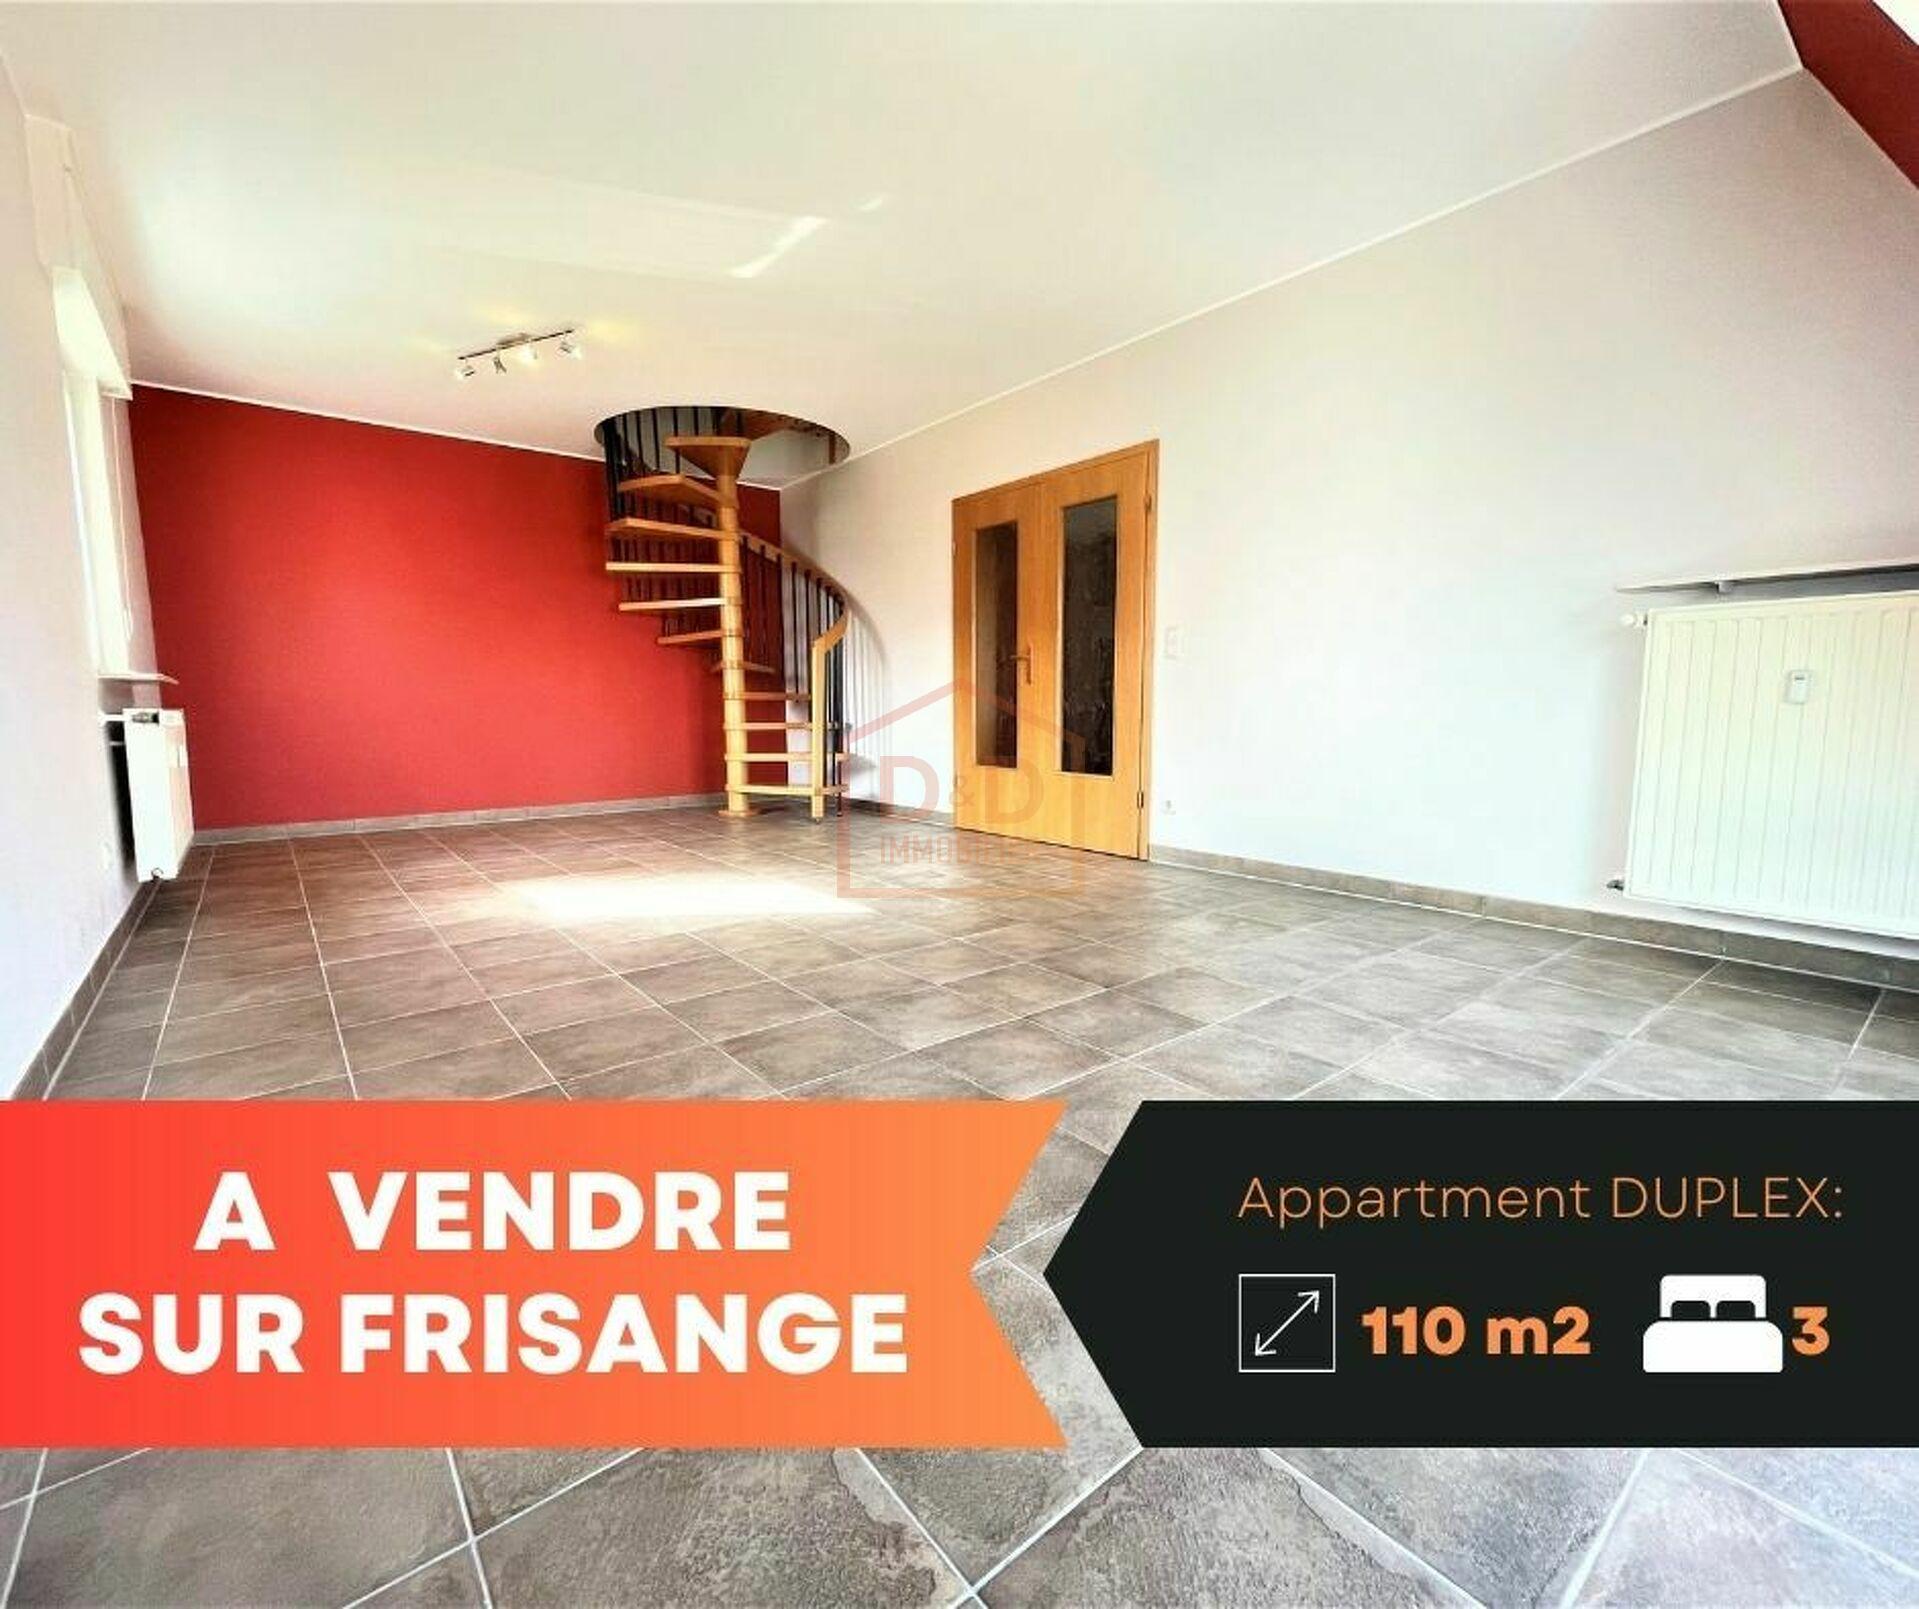 Appartement à Frisange, 110 m², 3 chambres, 1 salle de bain, 1 garage, 745 000 €